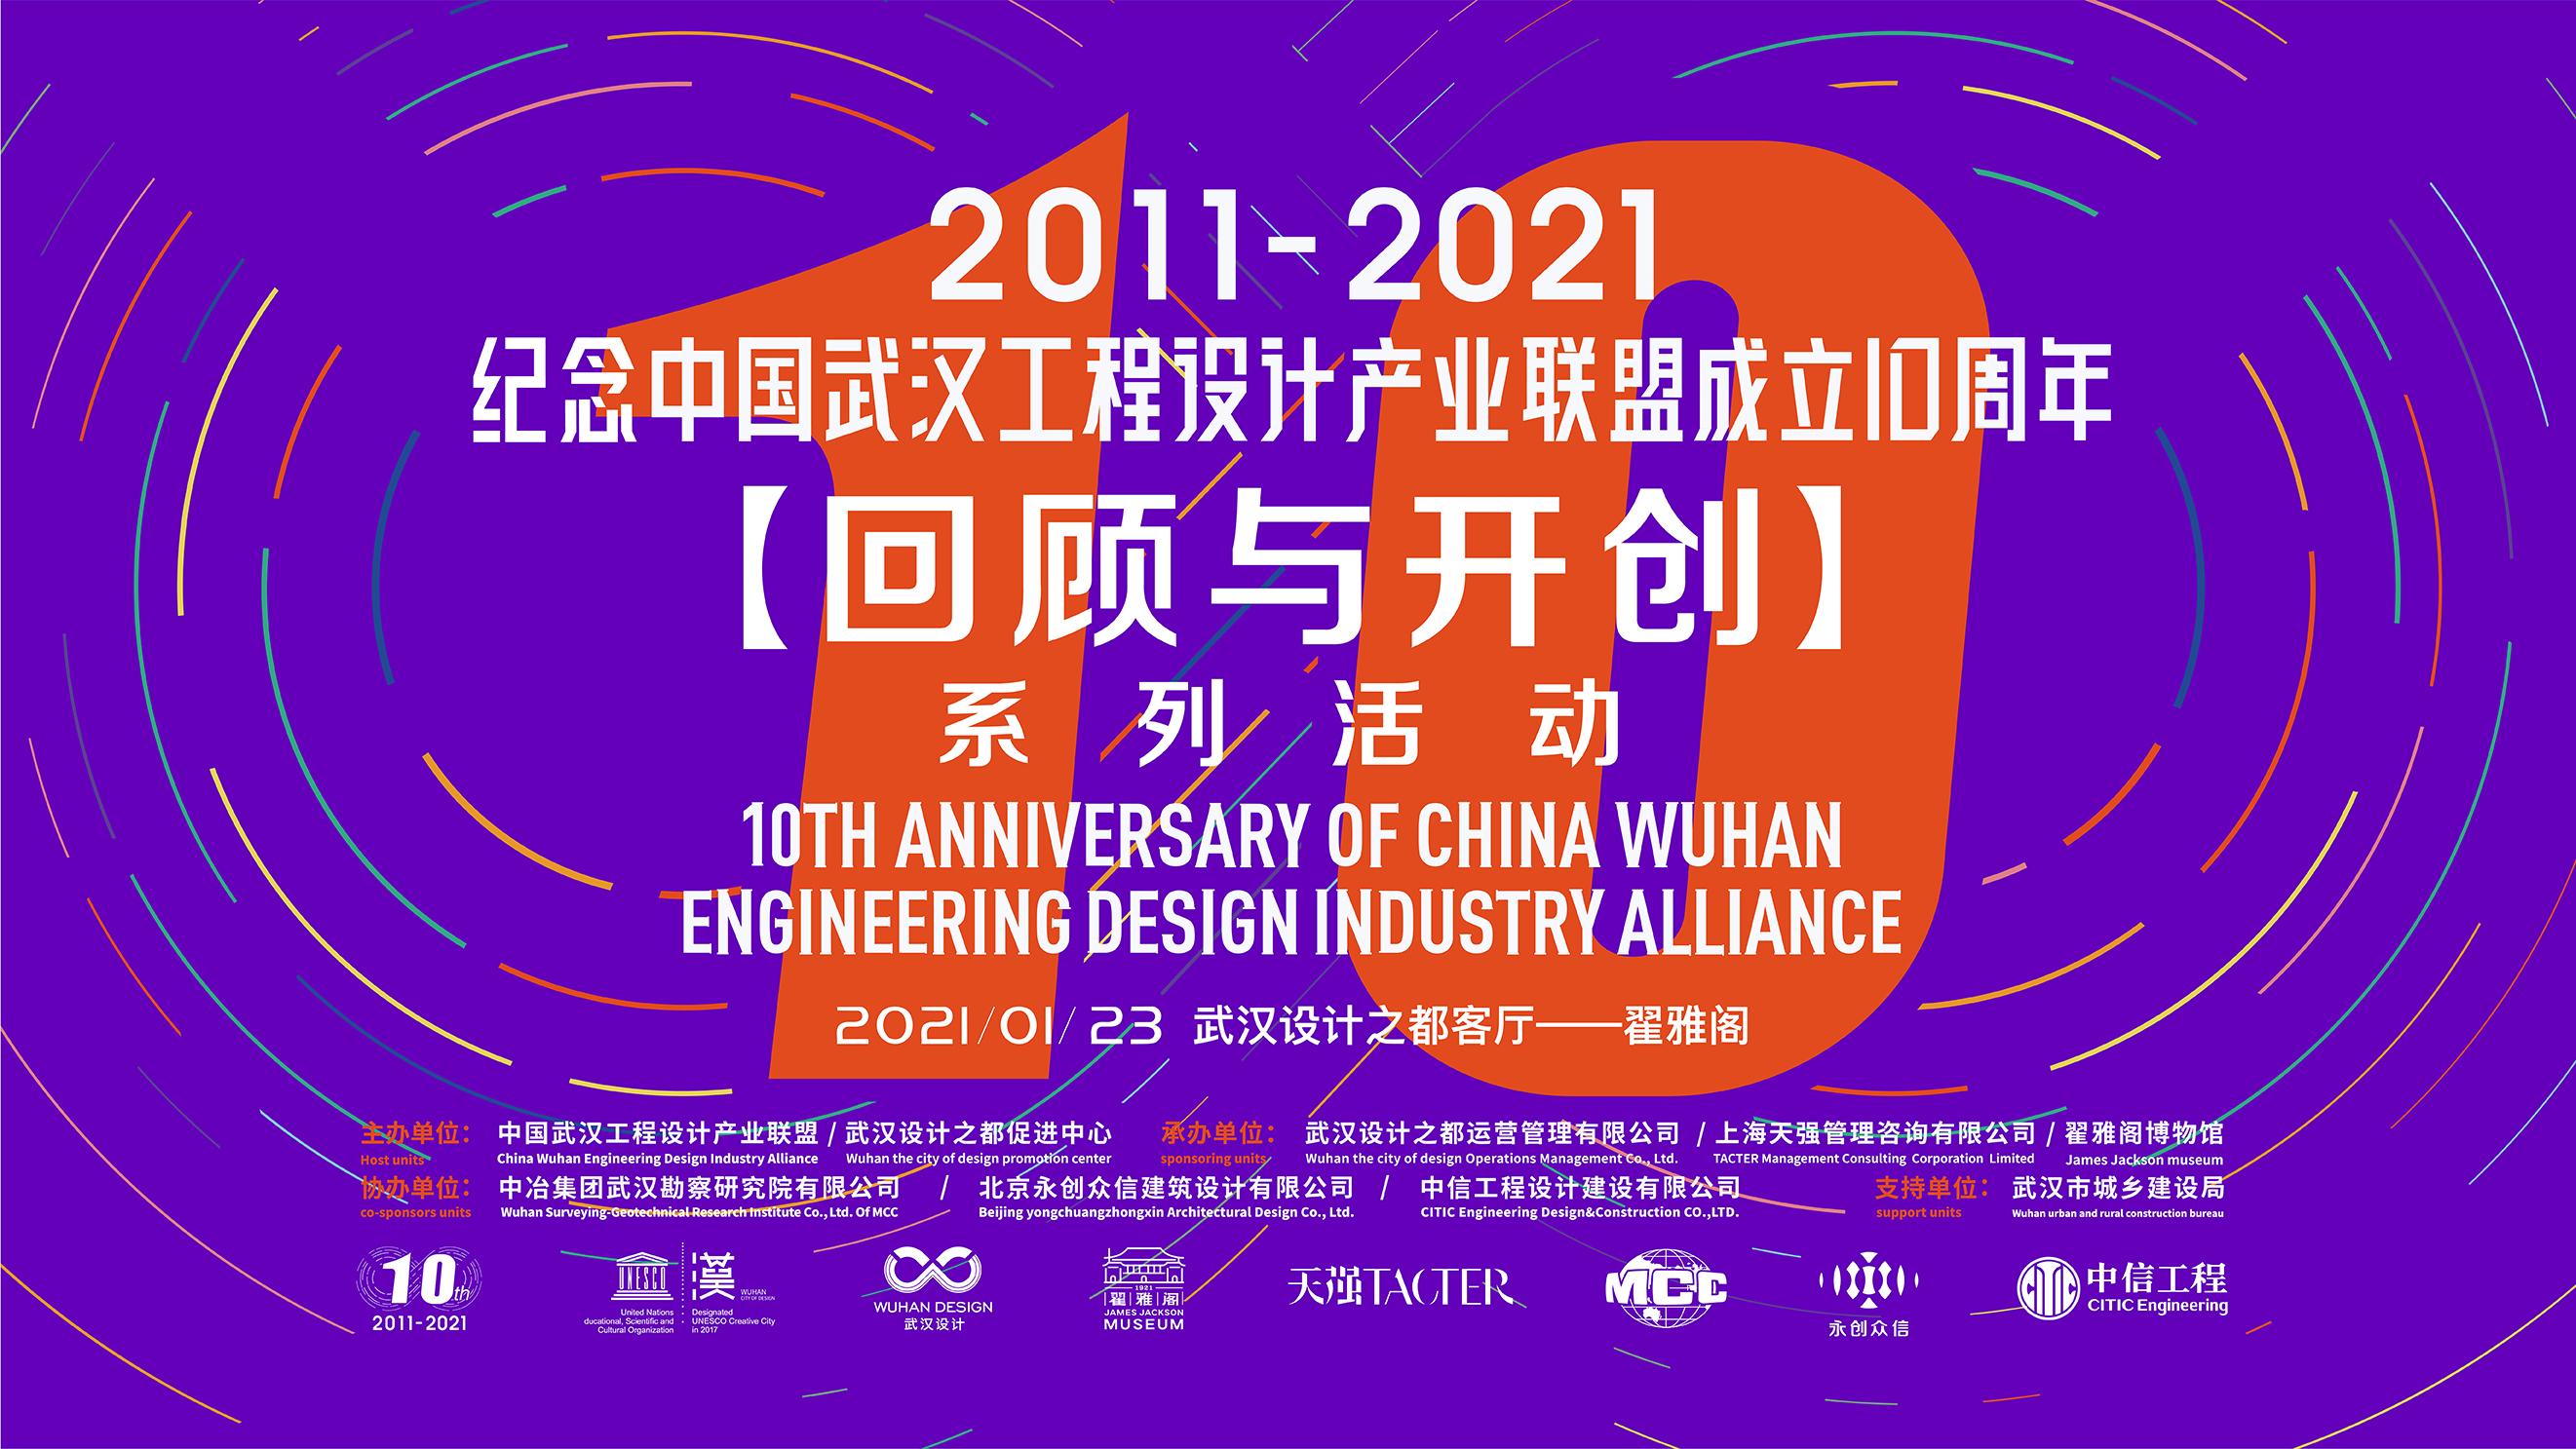 纪念中国武汉工程设计产业联盟成立10周年【回顾与开创】系列活动成功举办